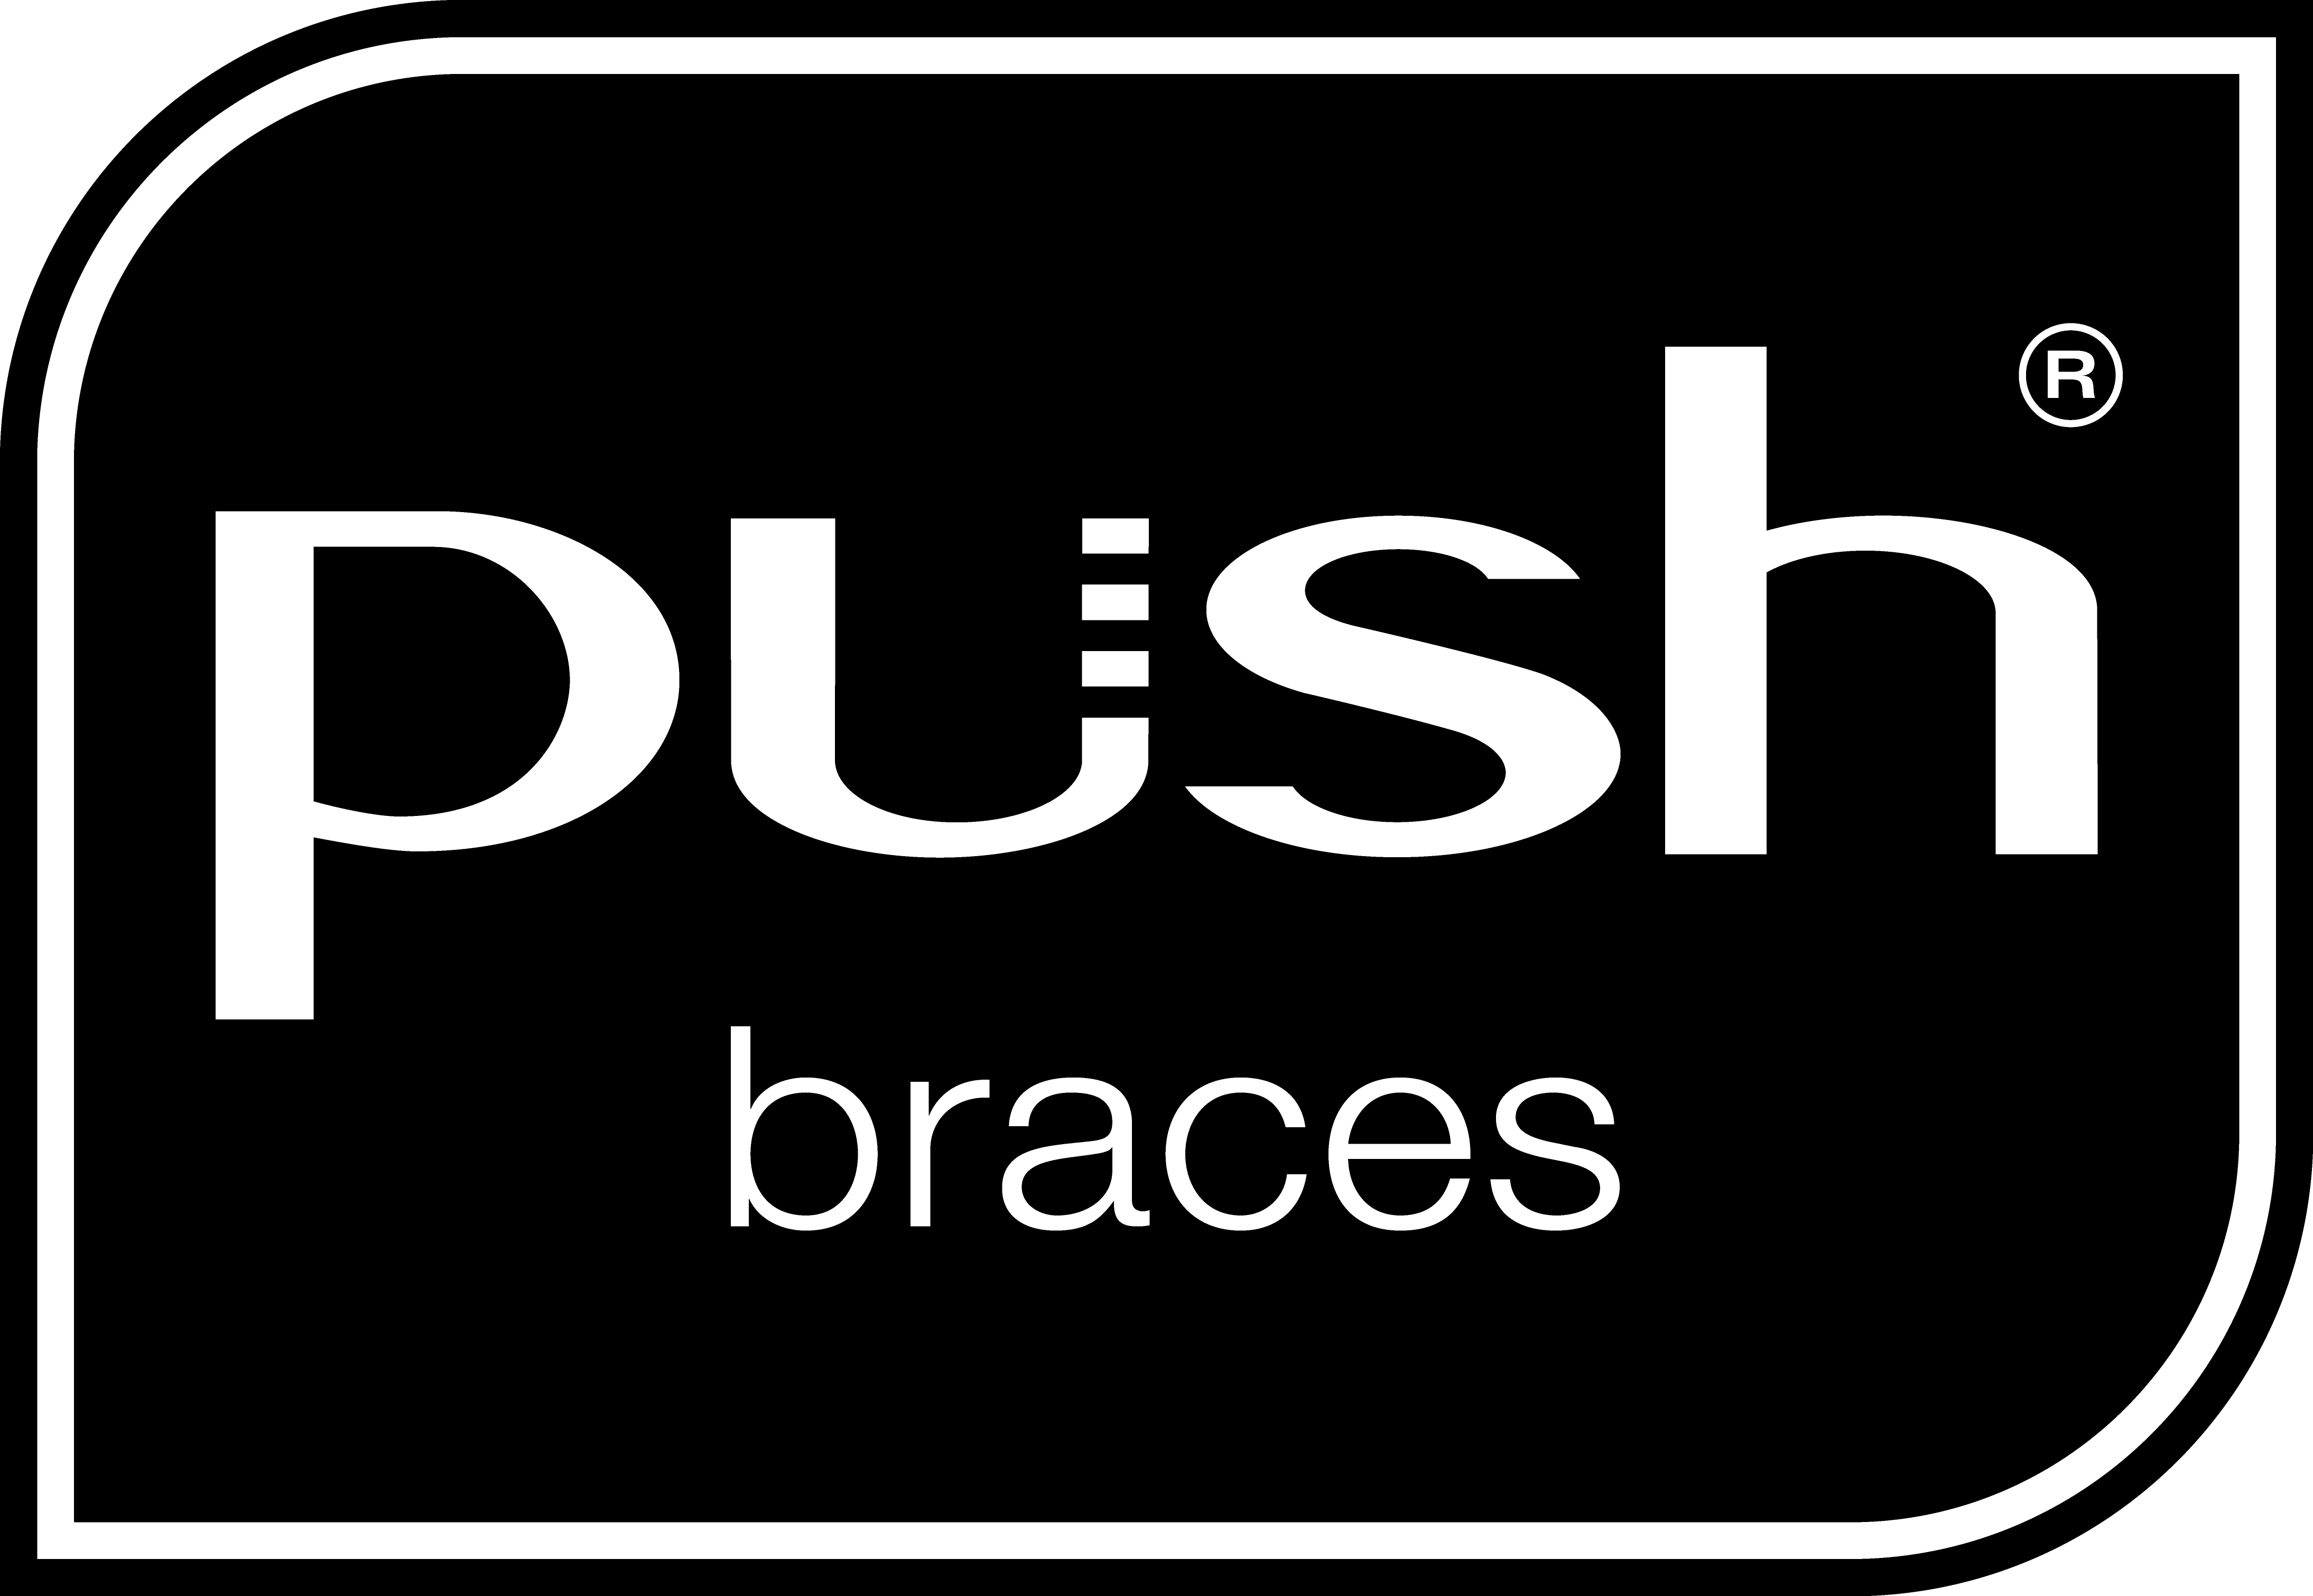 PUSH logo